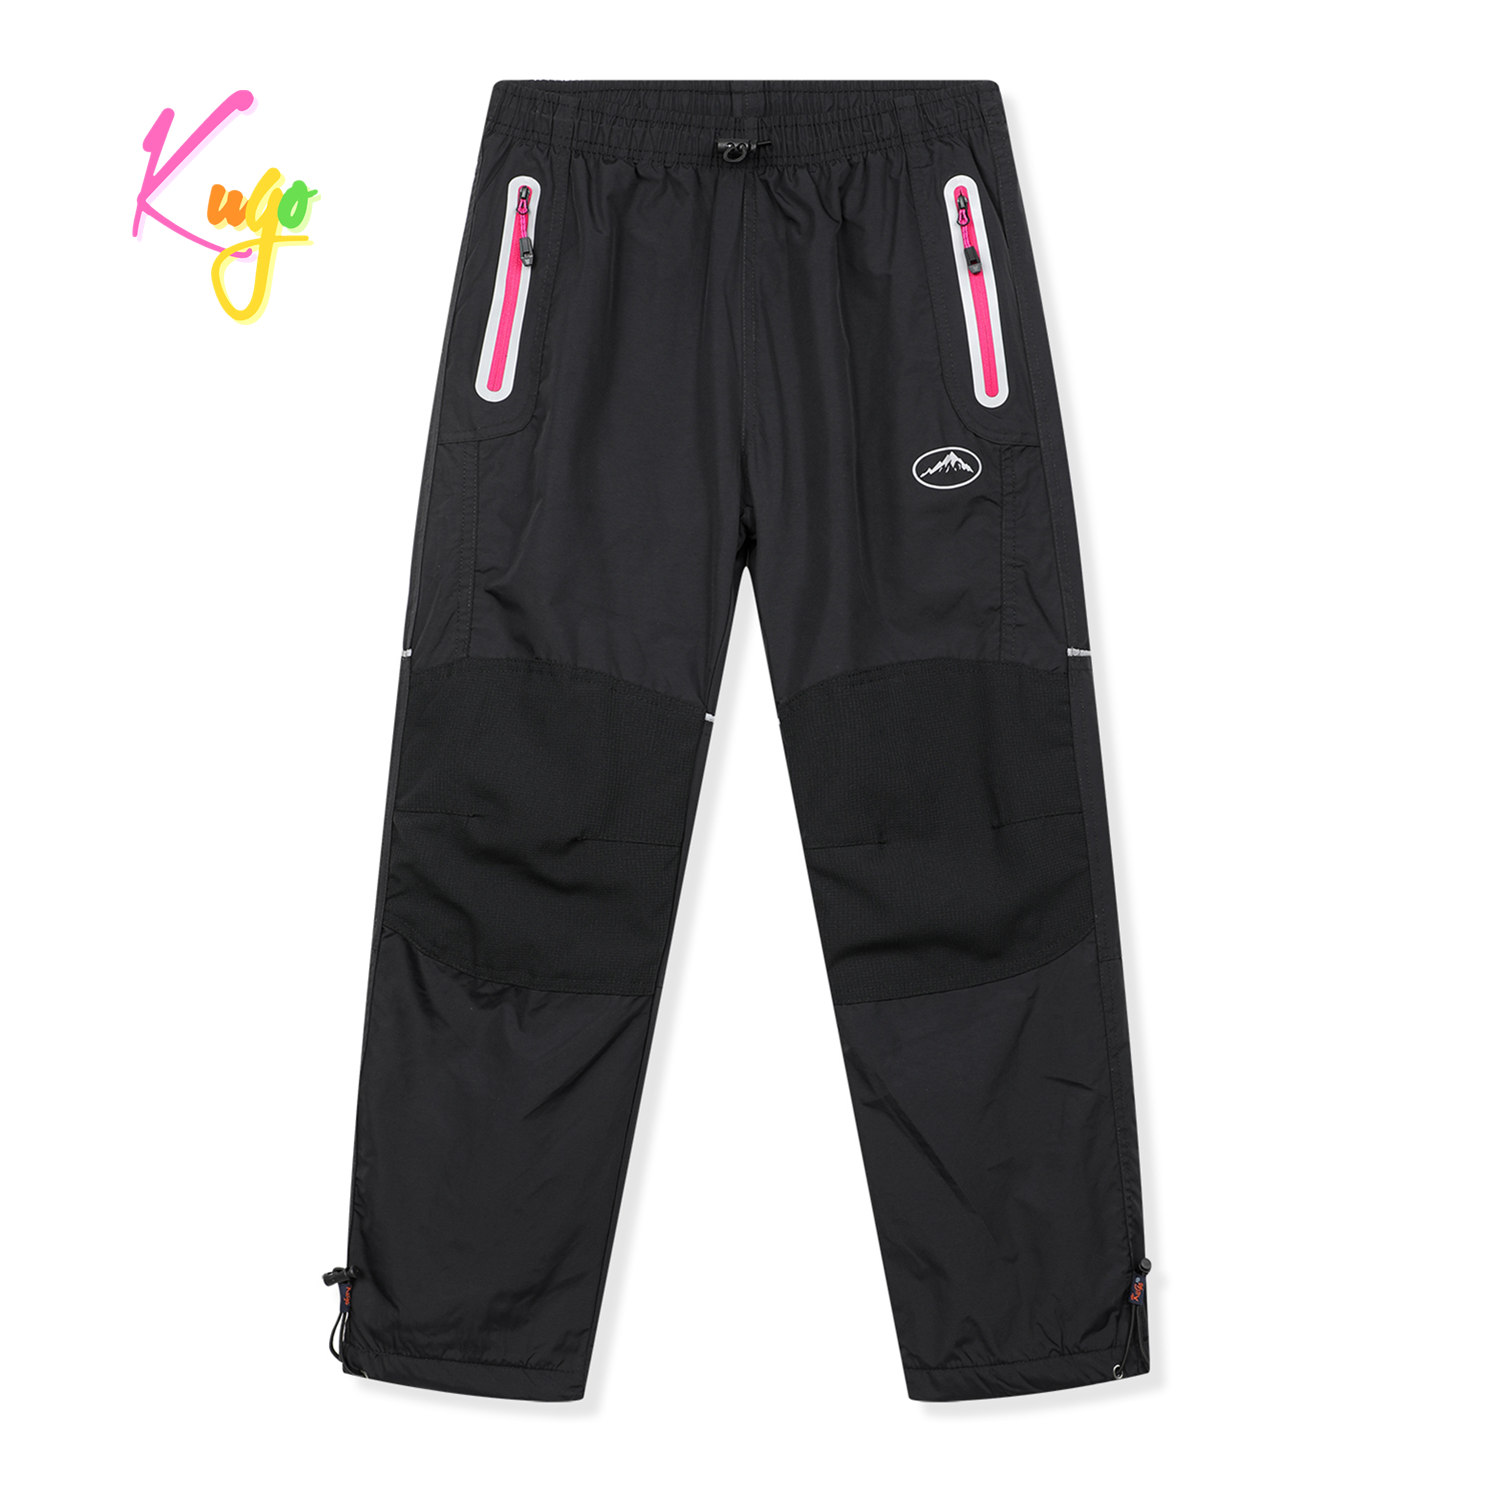 Dívčí šusťákové kalhoty, zateplené - KUGO DK8237, černá / růžové zipy Barva: Černá, Velikost: 146